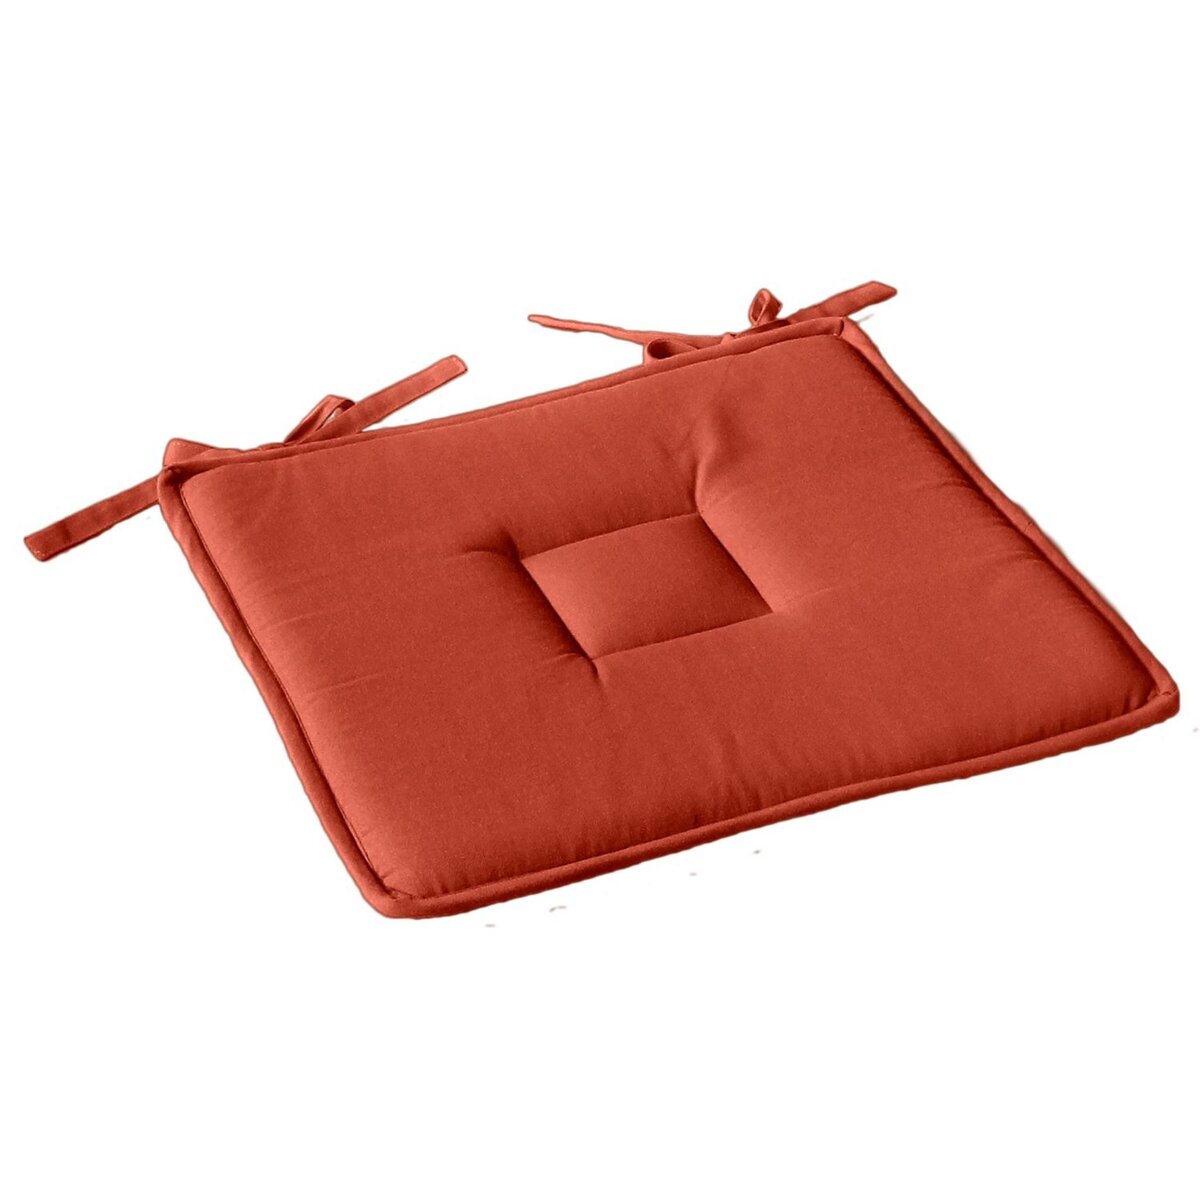 TOILINUX Galette de chaise plate Panama - 40 cm x 40 cm - Orange terre cuite